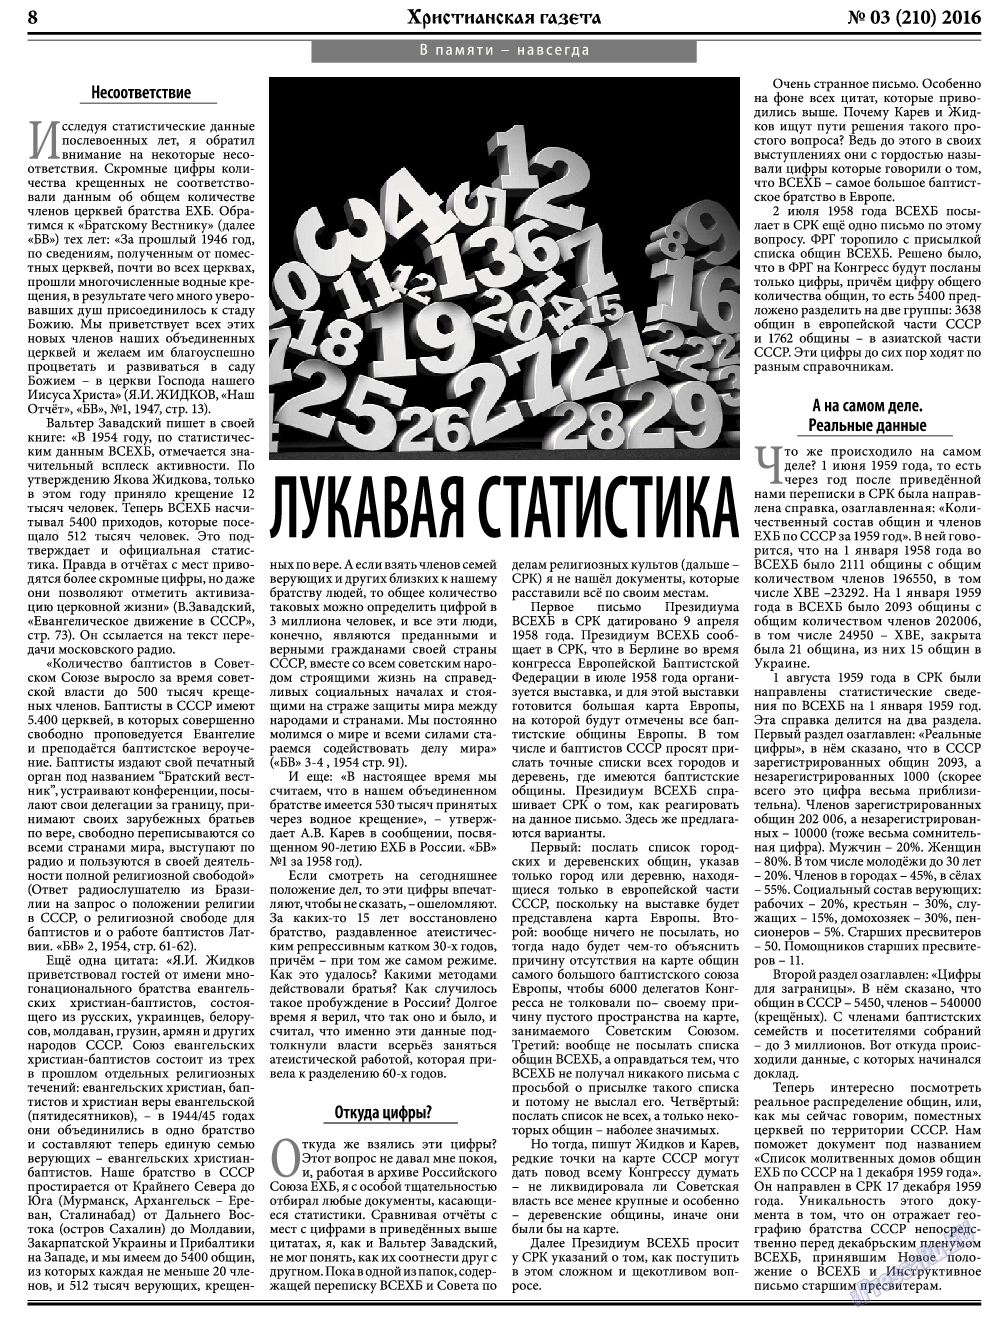 Христианская газета, газета. 2016 №3 стр.8